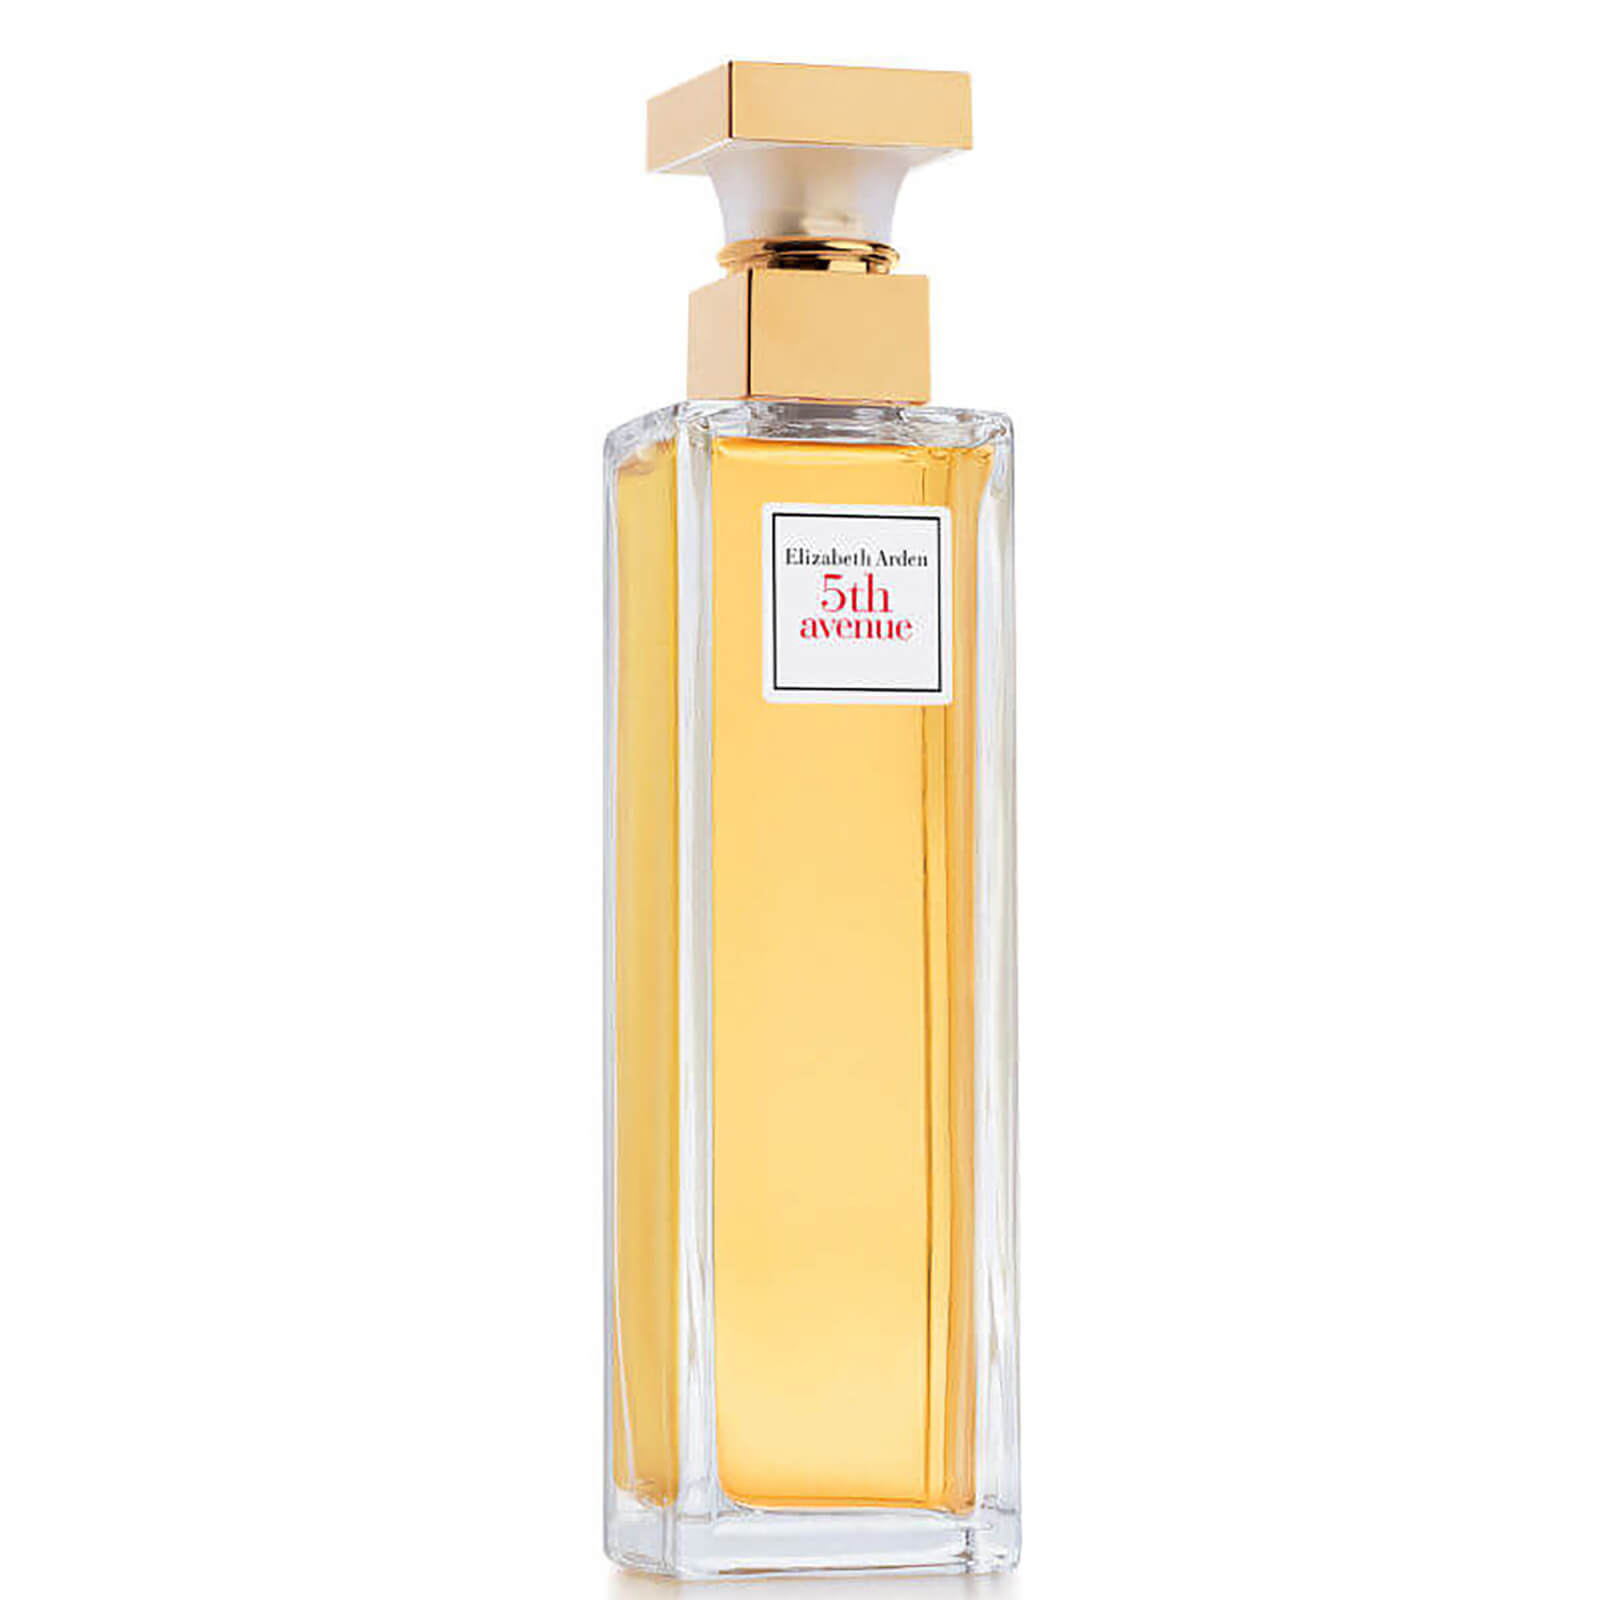 Image of Eau de Parfum Profumo 5th Avenue Elizabeth Arden 75ml